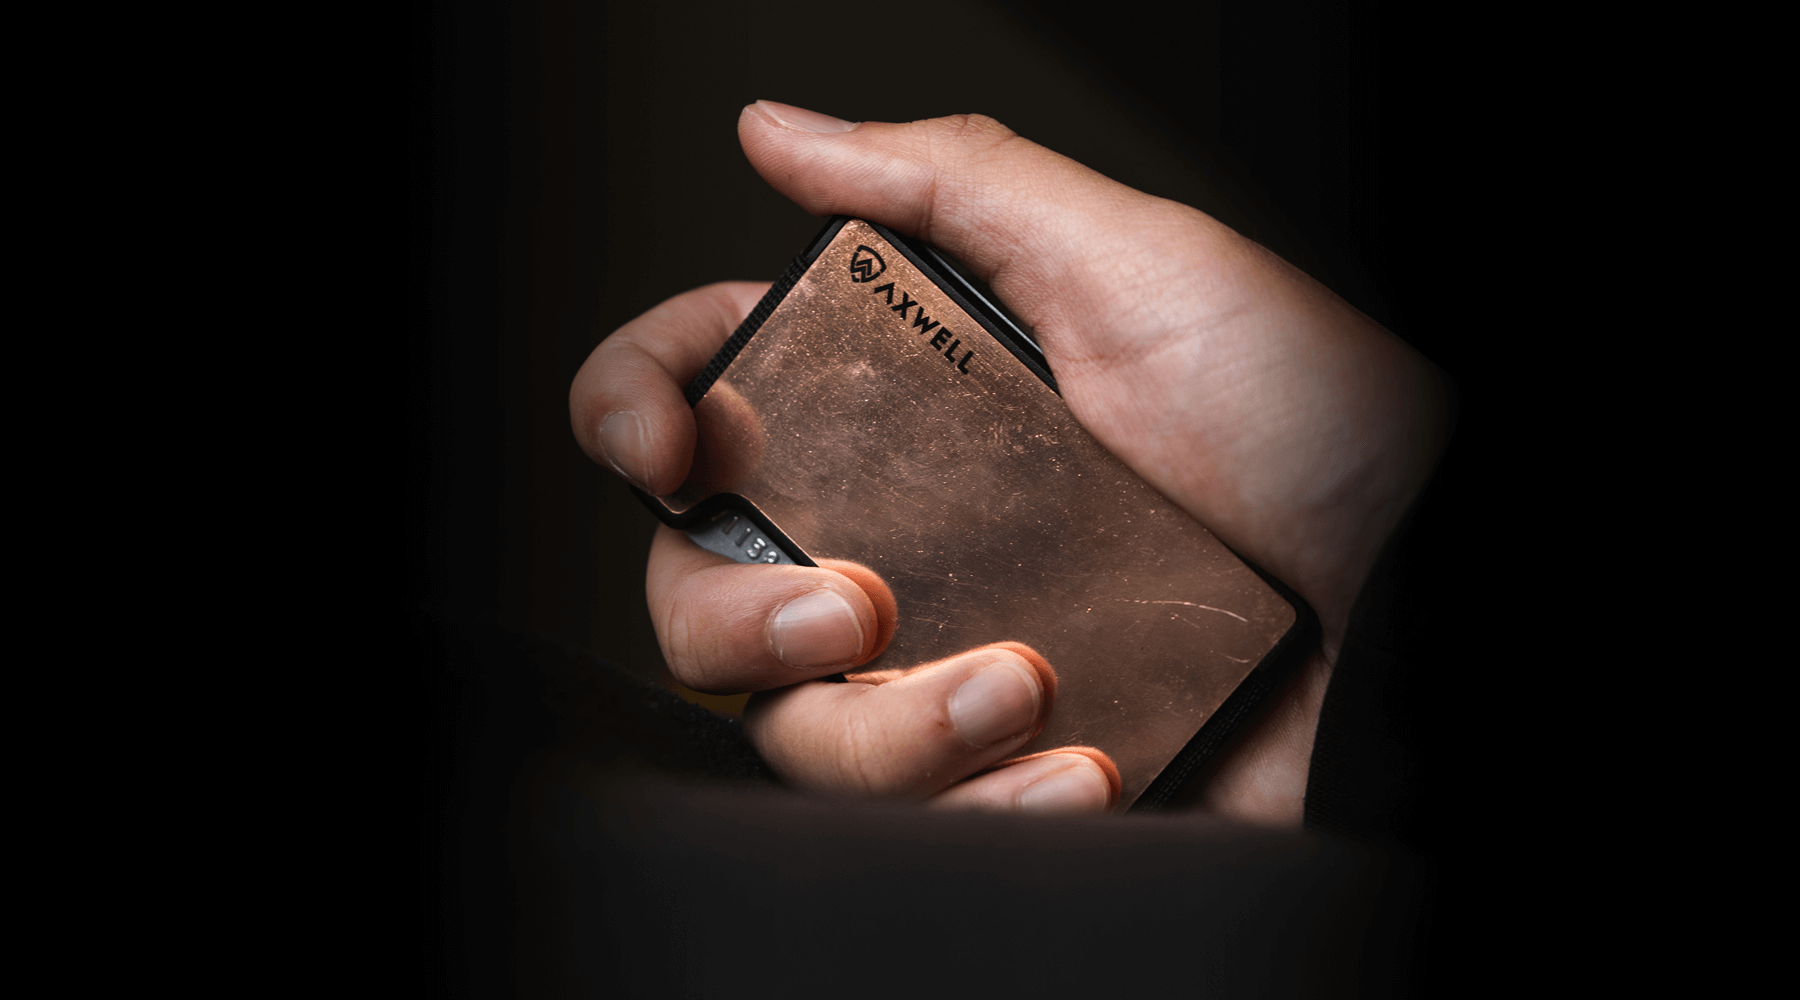 Copper Axwell Wallet